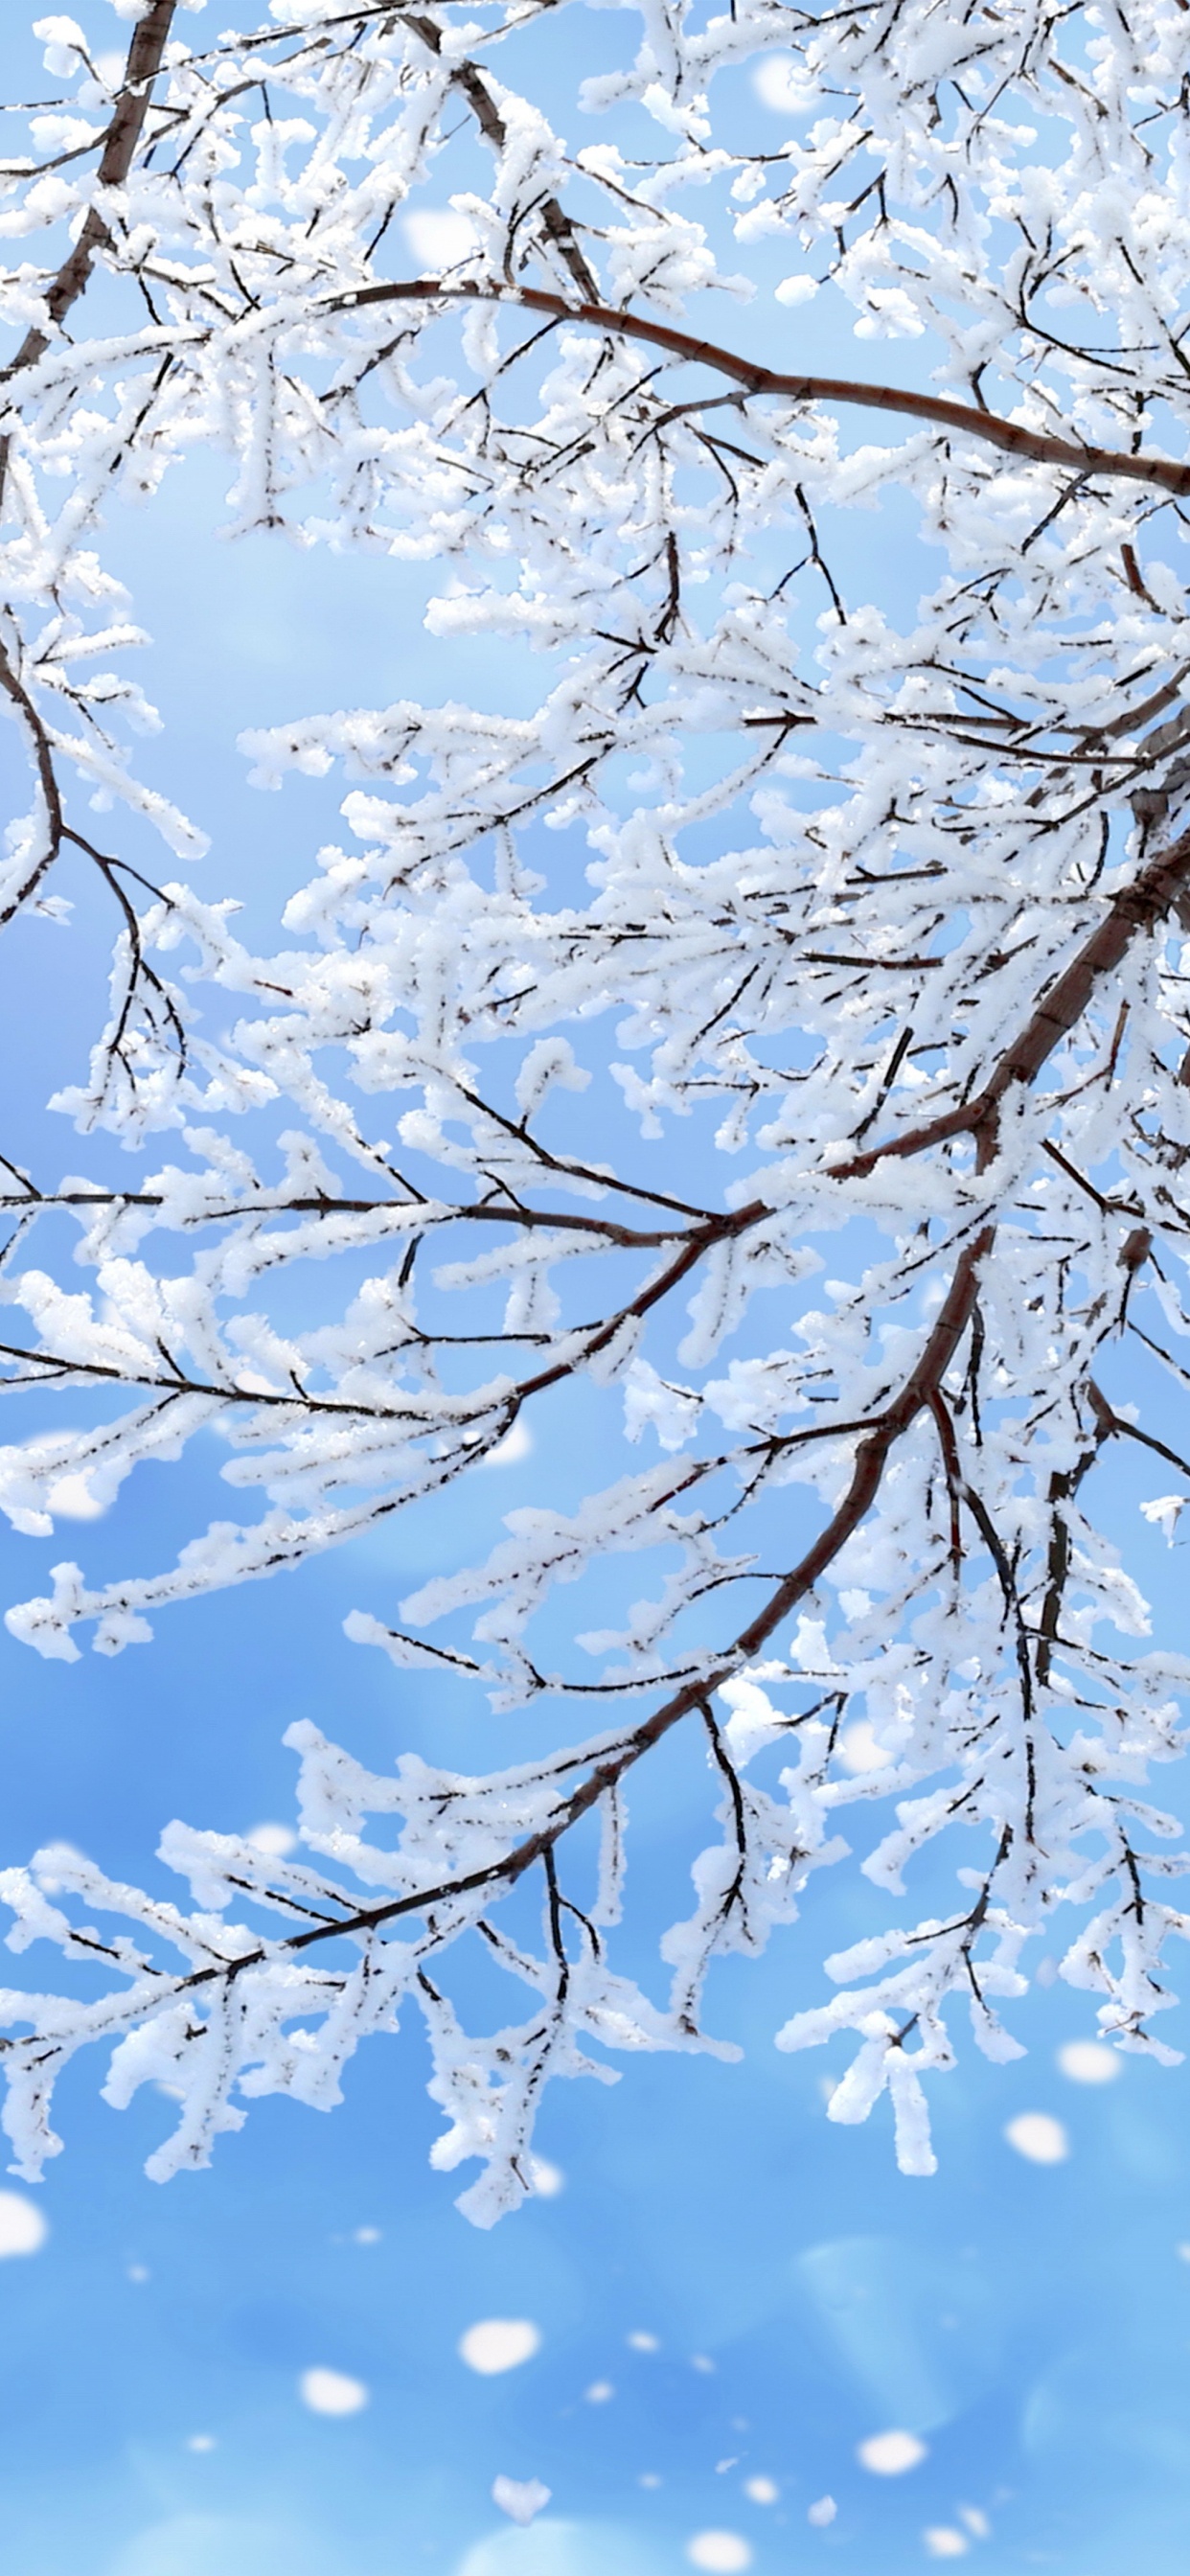 冬天, 树枝, 雪花, 季节, 冻结 壁纸 1242x2688 允许